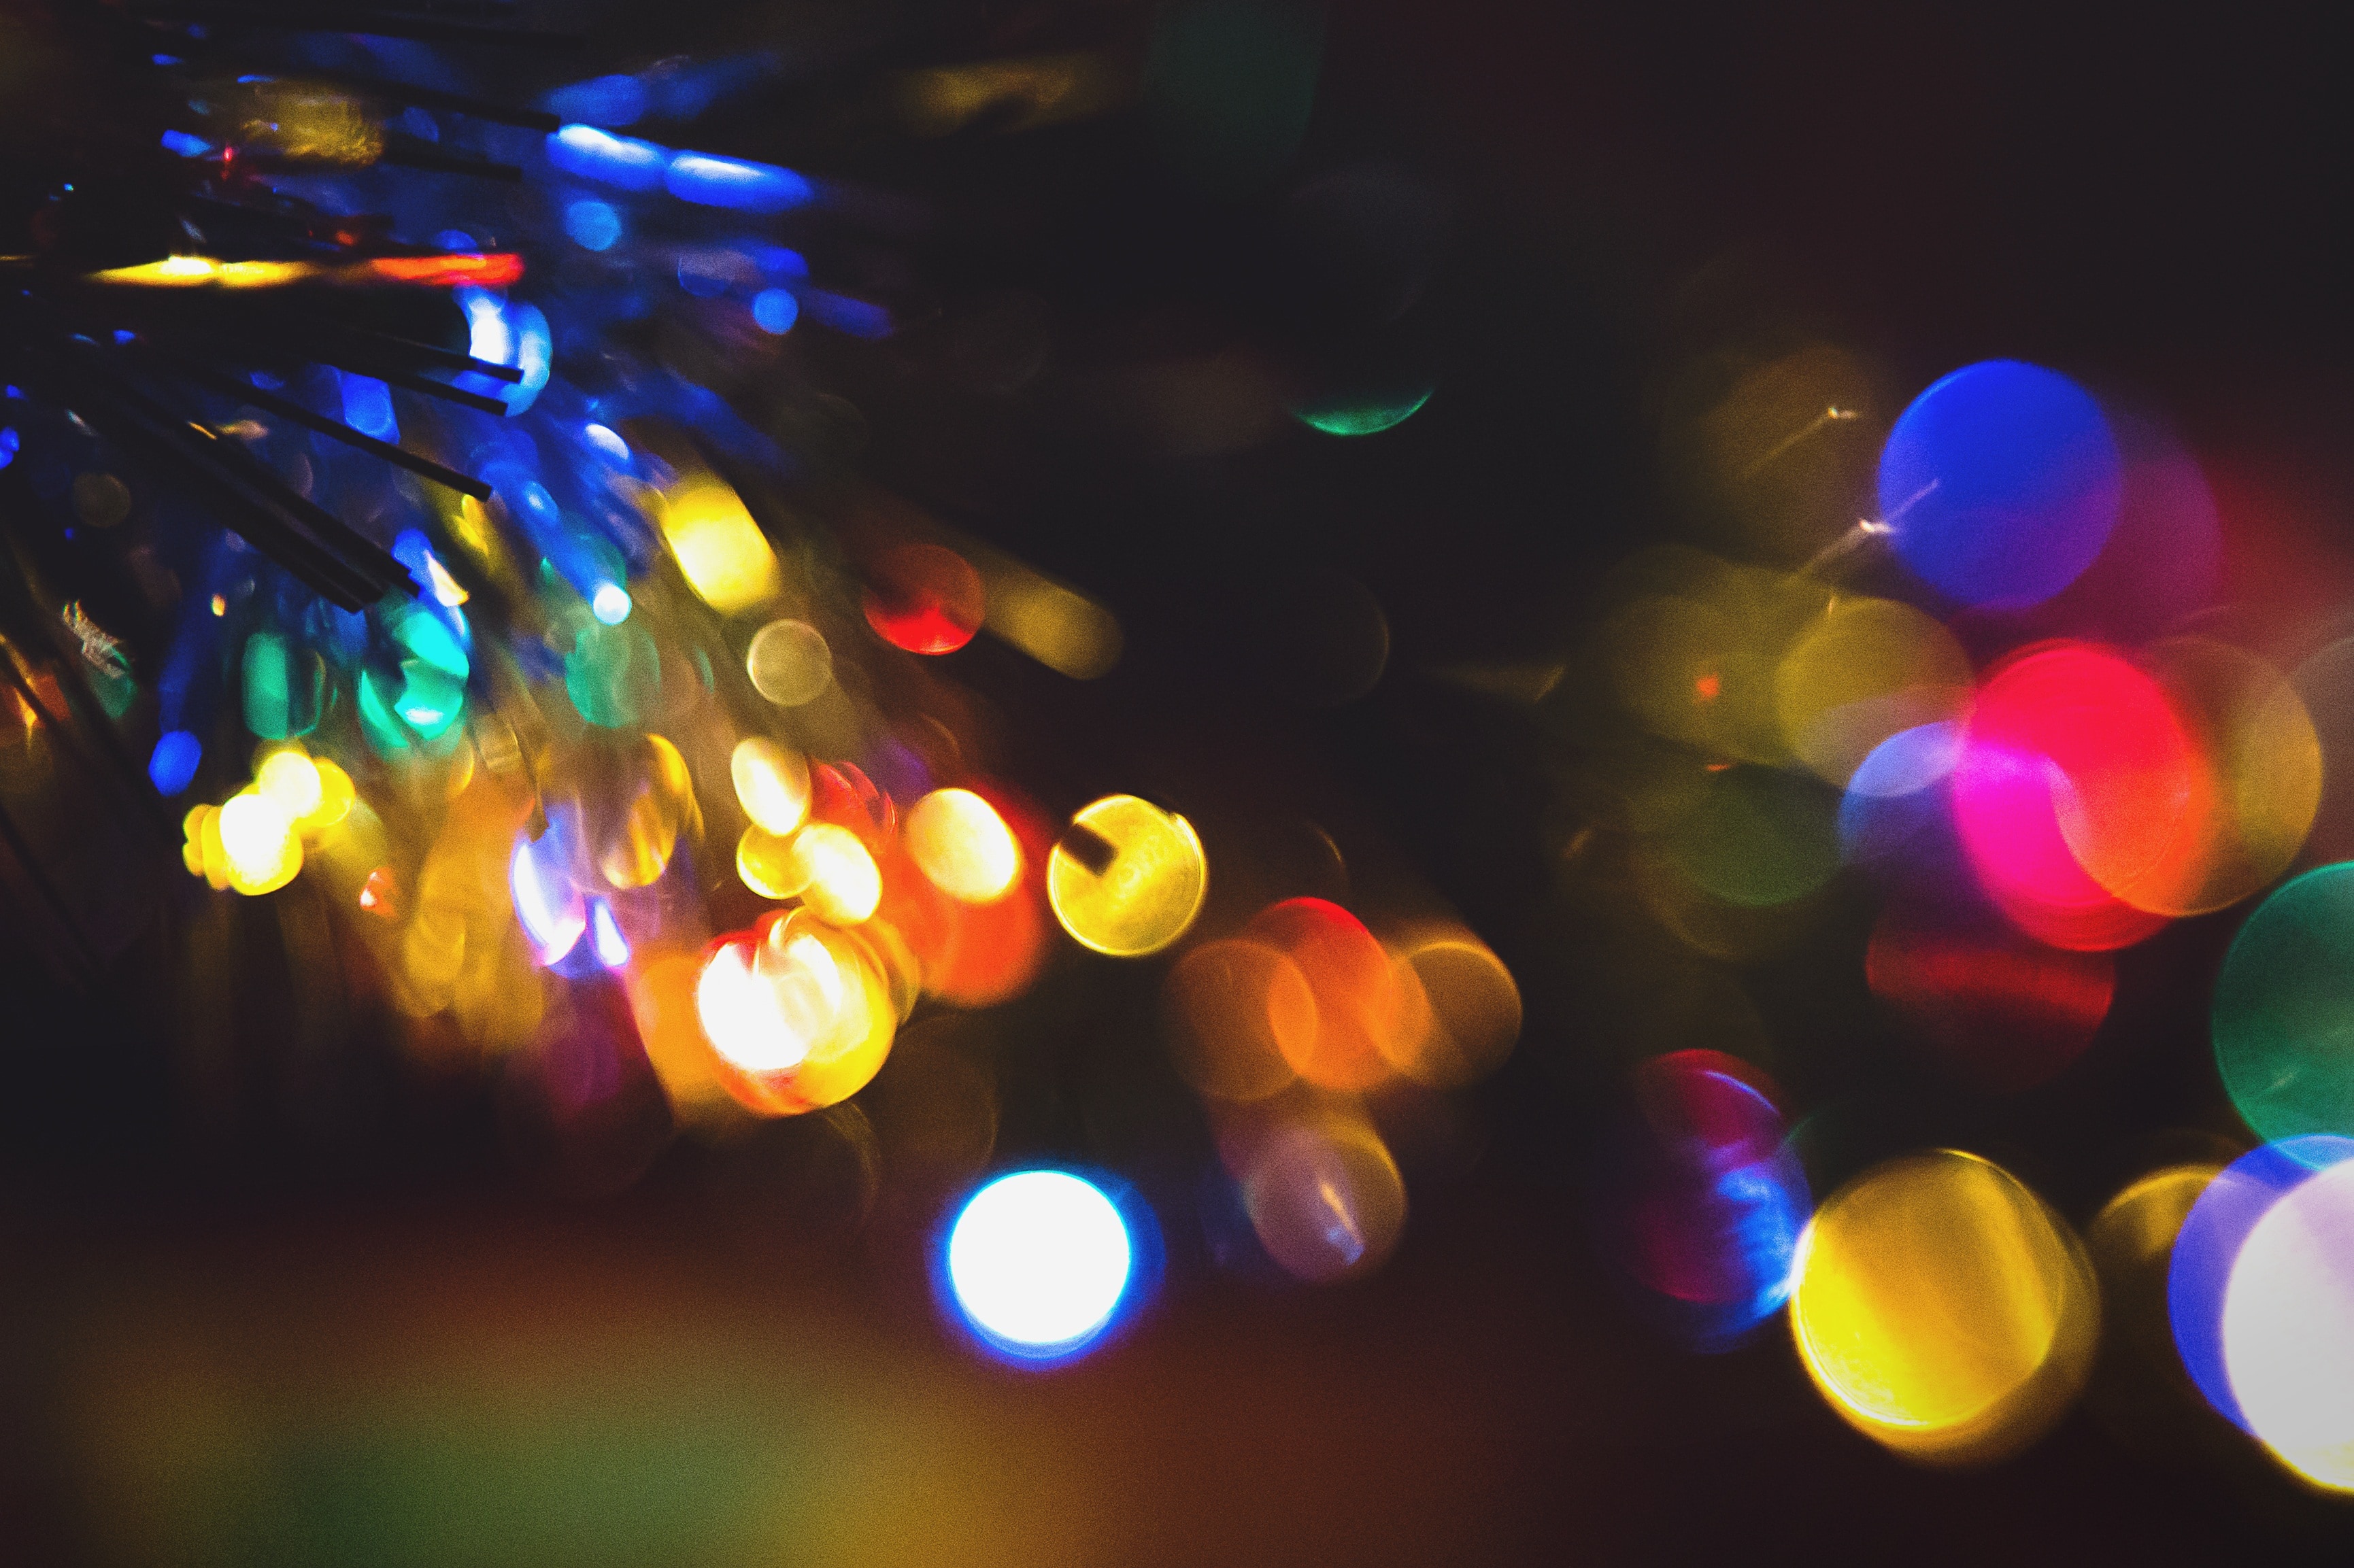 Light, Christmas Tree, Christmas, Tree, illuminated, defocused